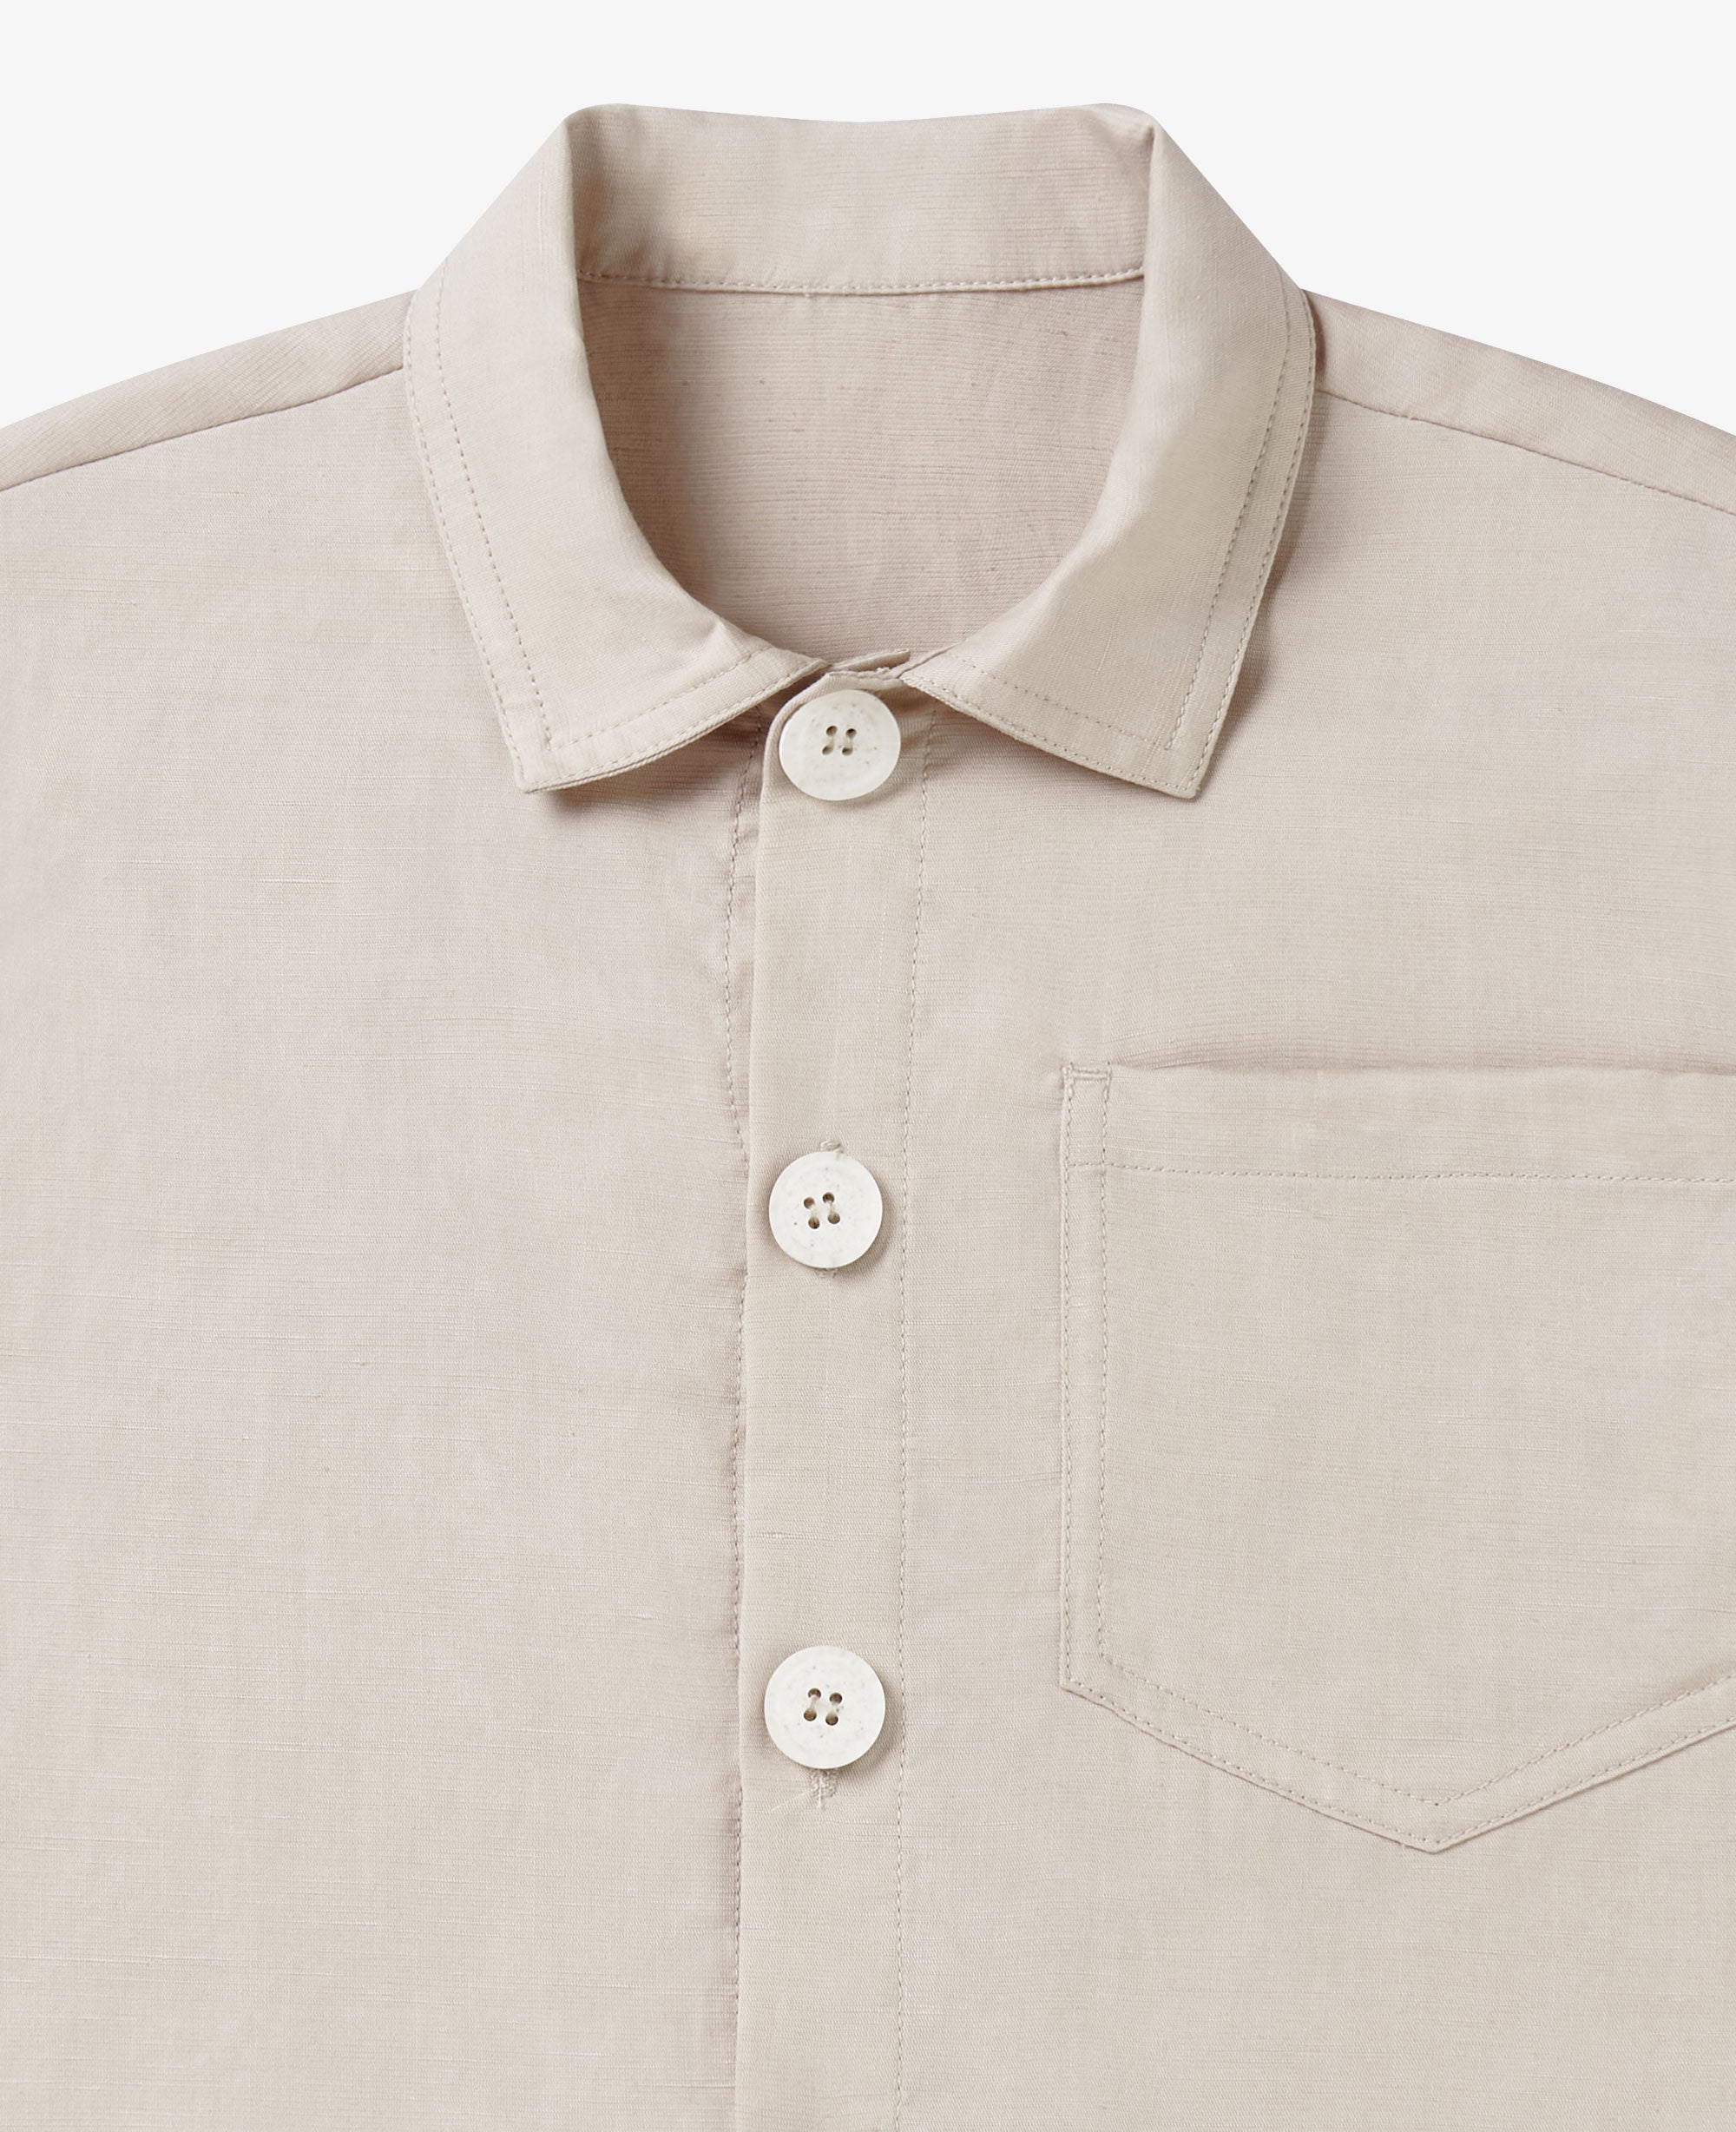 Tencel Linen Short Sleeve Shirt - Dune